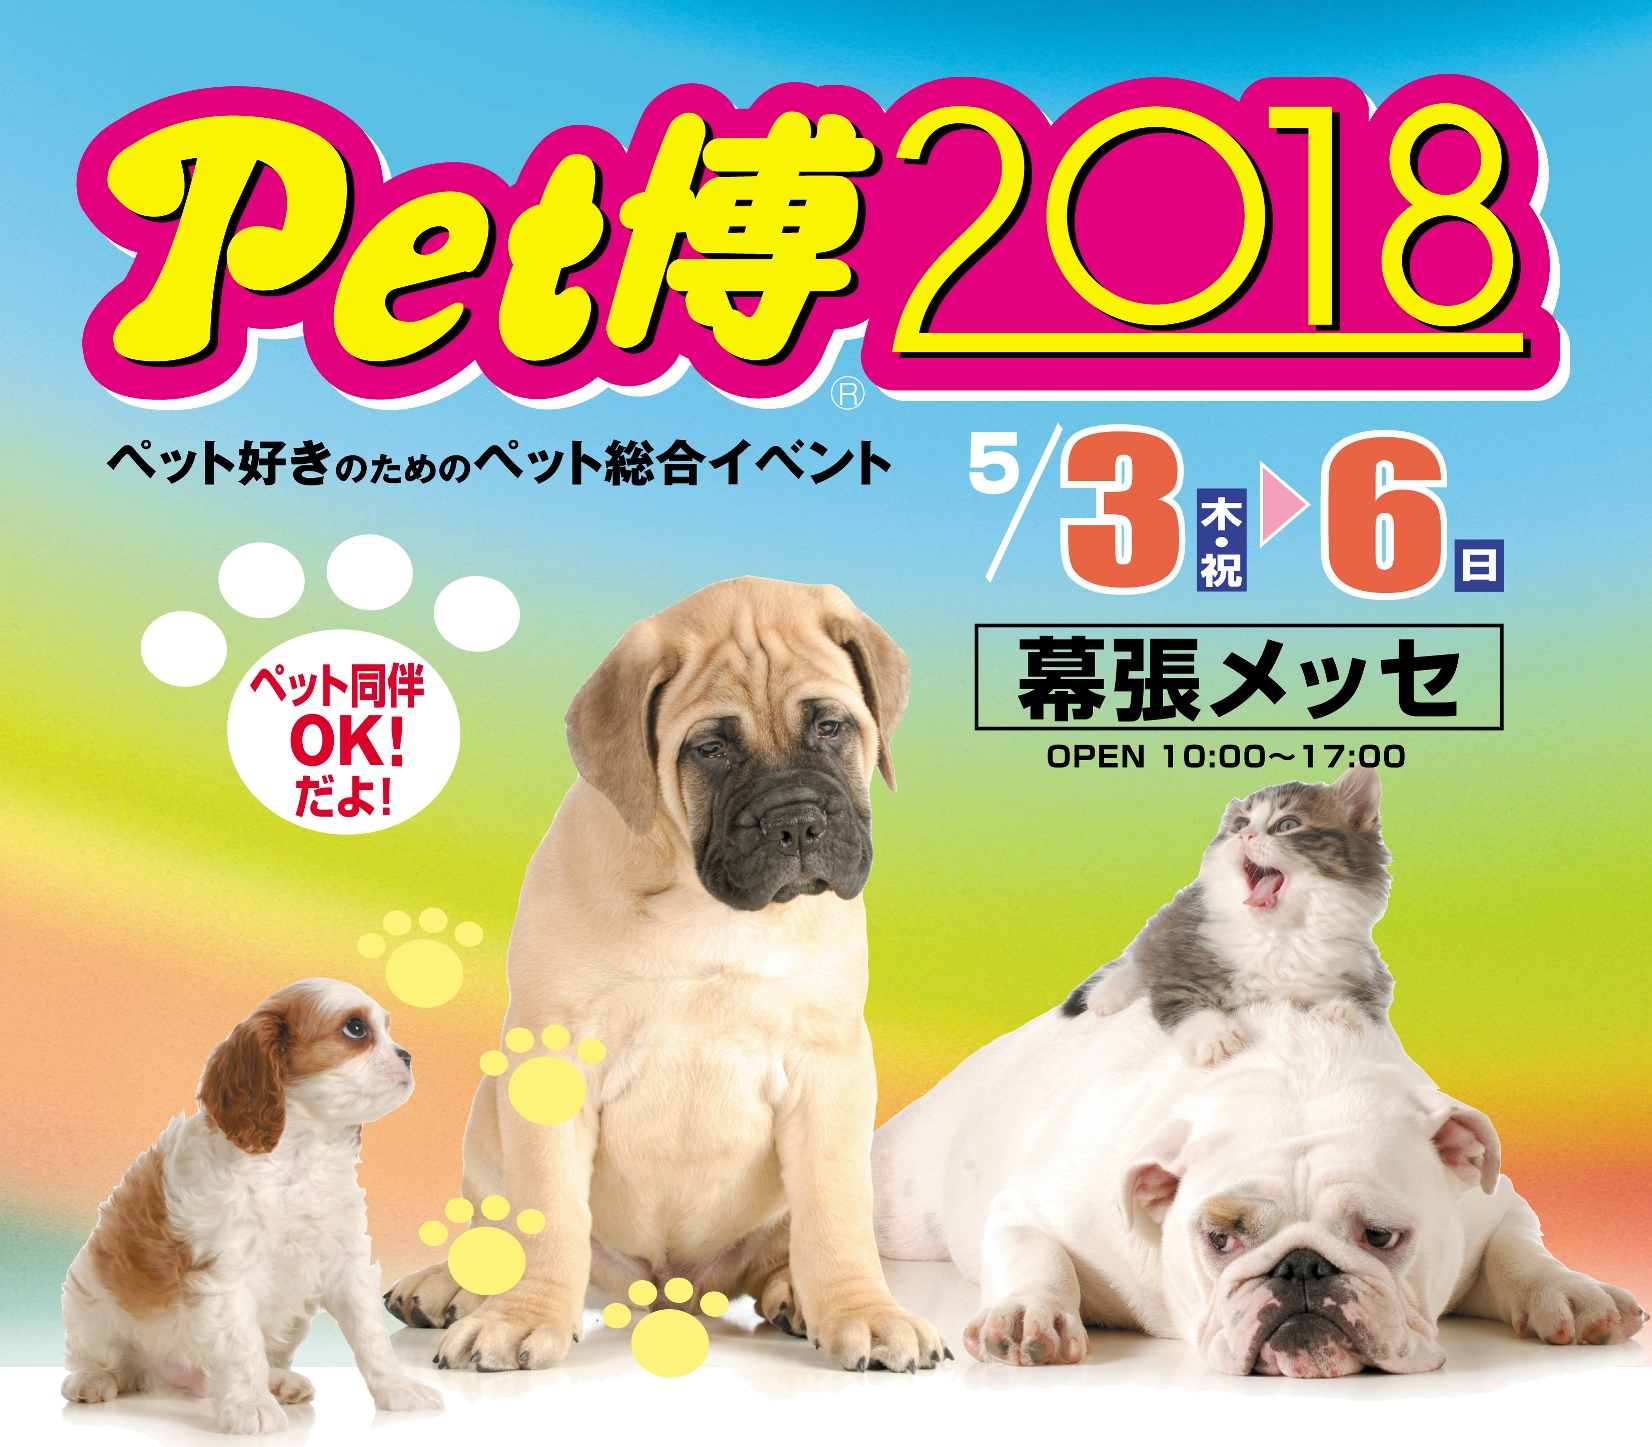 【イベント情報】Pet博2018　幕張メッセ